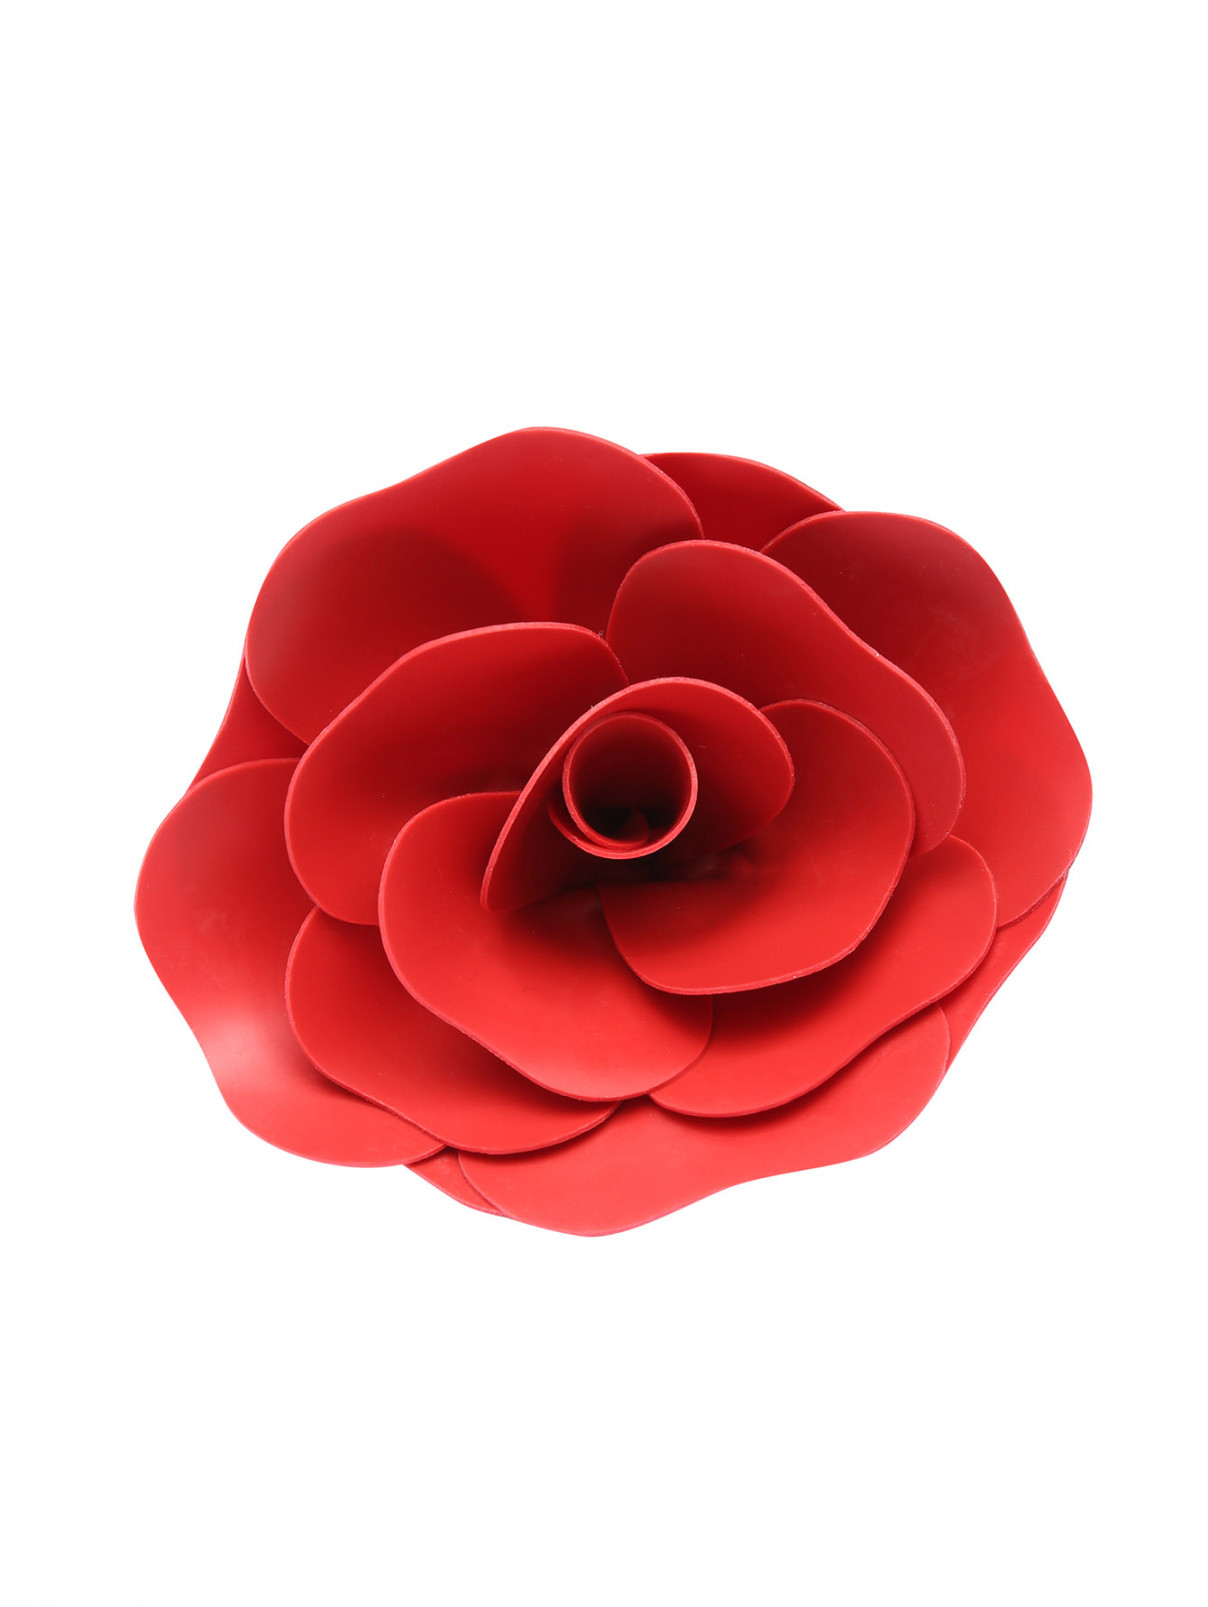 Брошь-цветок из латекса Philosophy di Lorenzo Serafini  –  Общий вид  – Цвет:  Красный